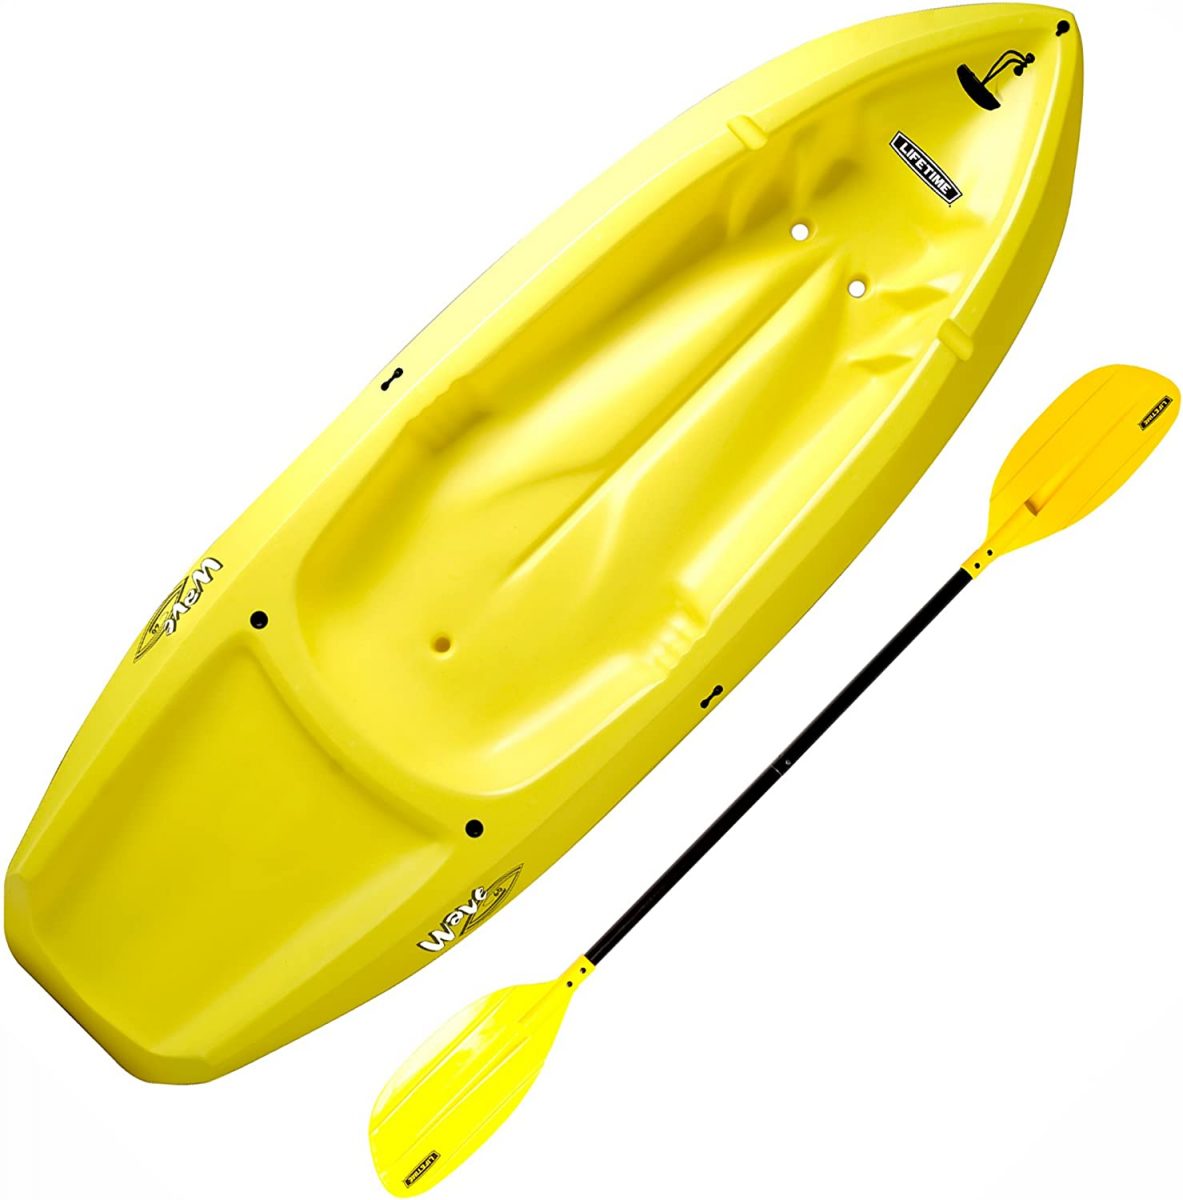 Lifetime youth kayak